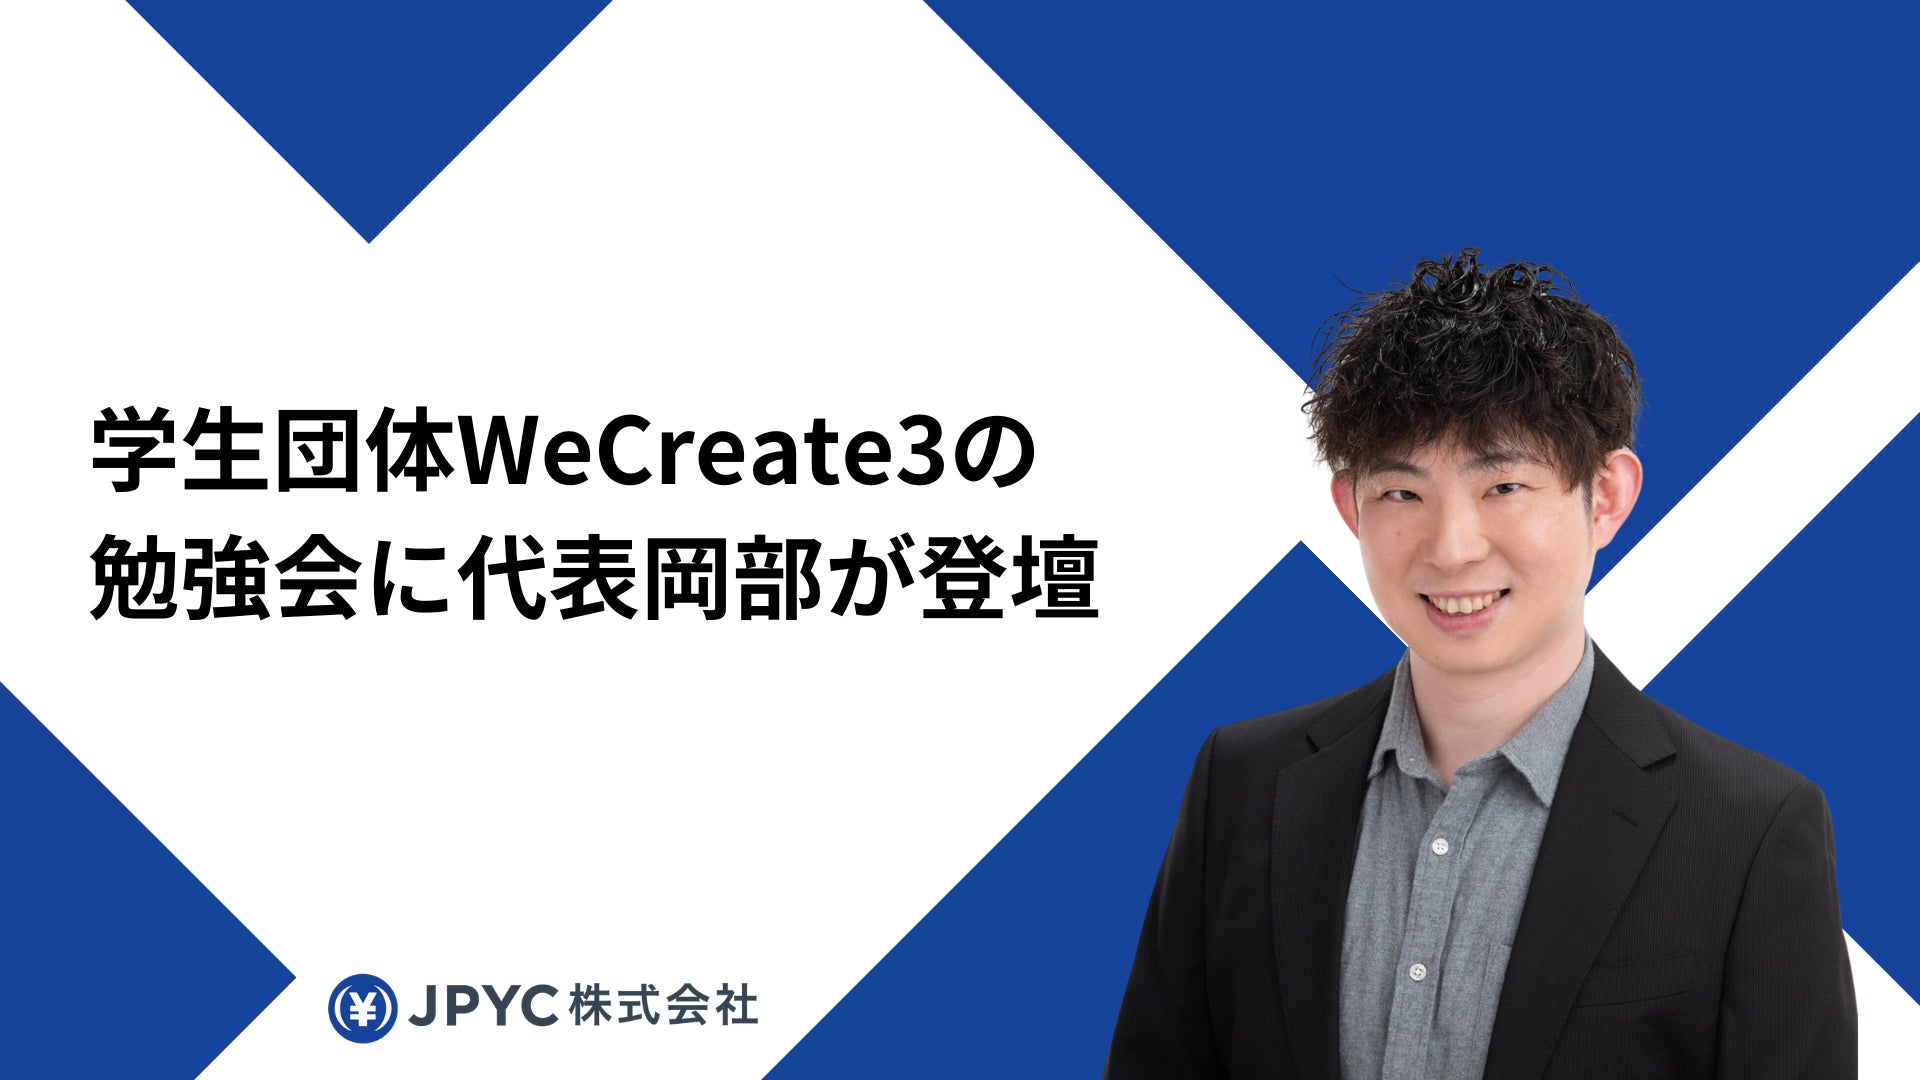 日本円ステーブルコインJPYC｜学生団体WeCreate3の勉強会に代表岡部が登壇